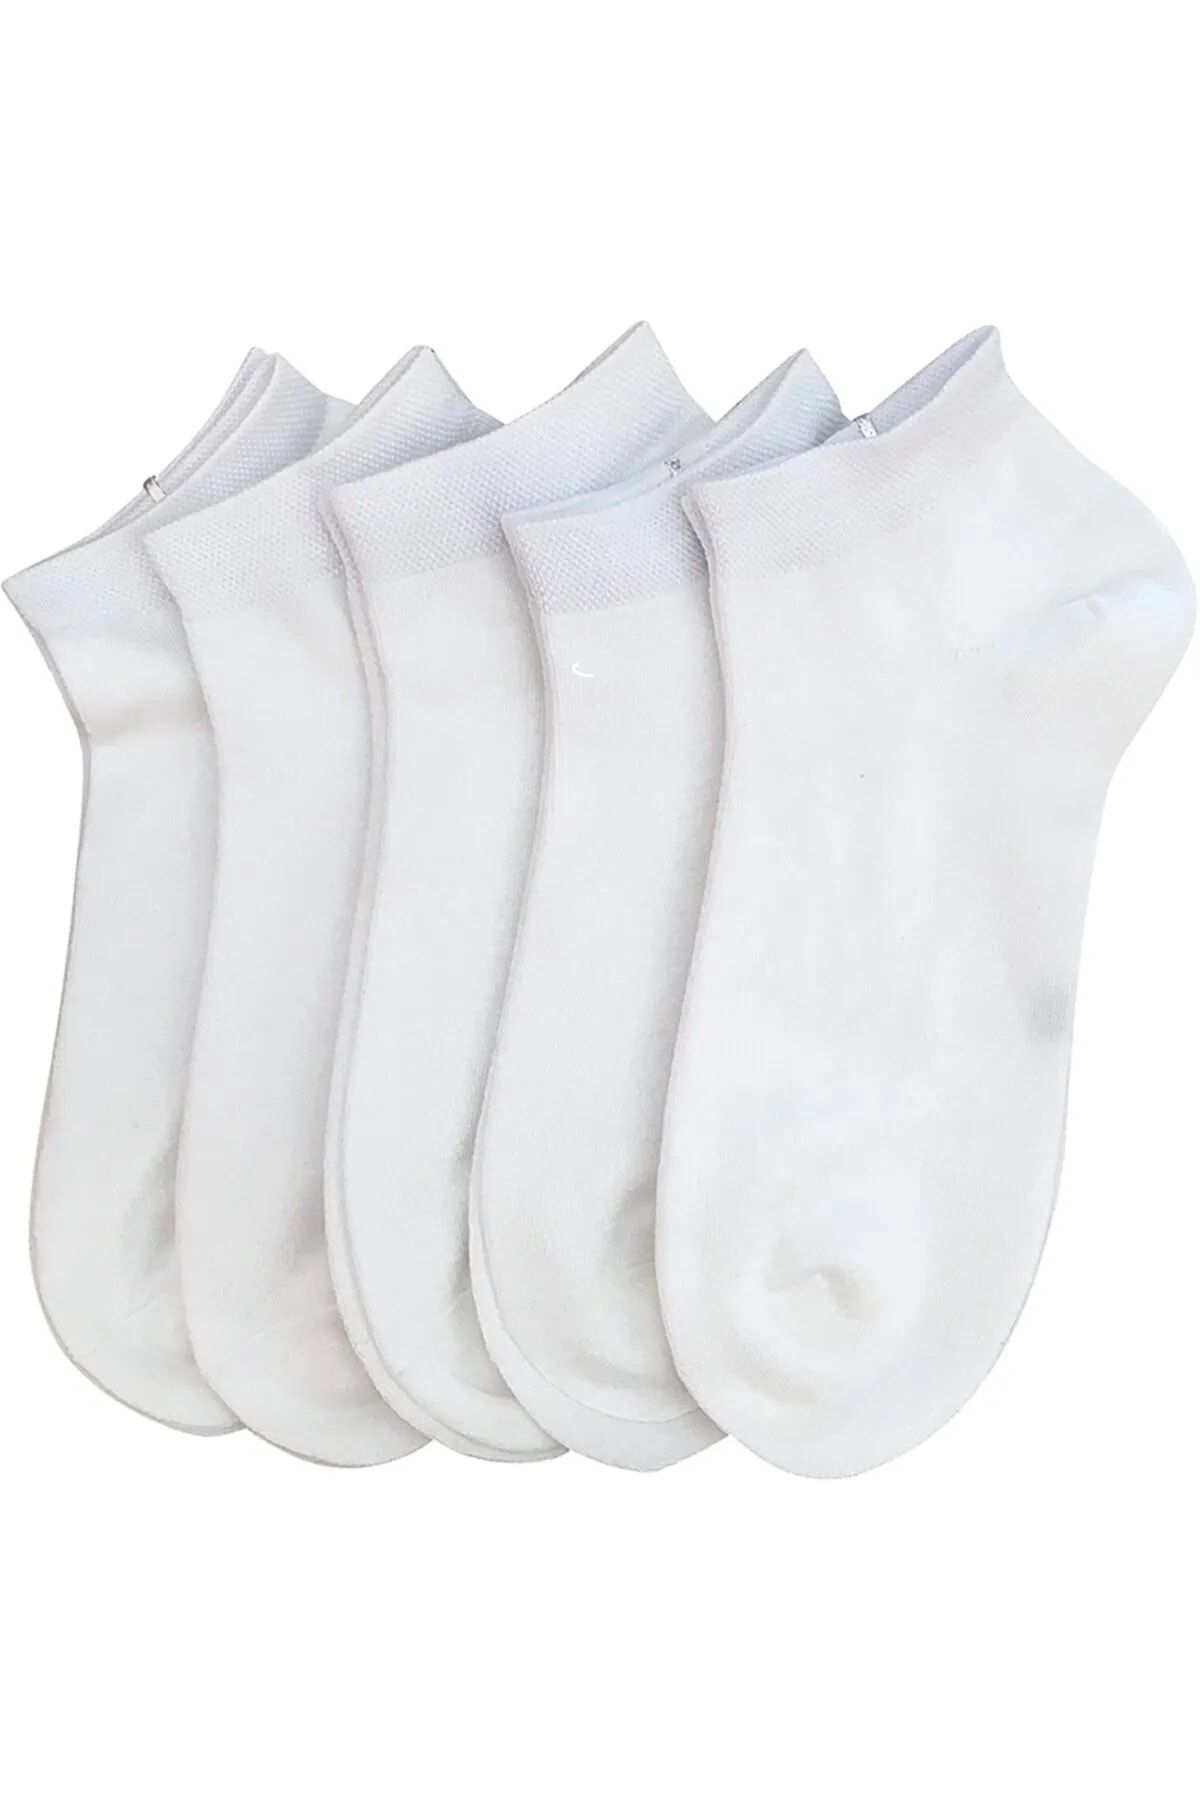 myprem socks Beyaz Pamuklu Bilek Boy Çorap 5^li